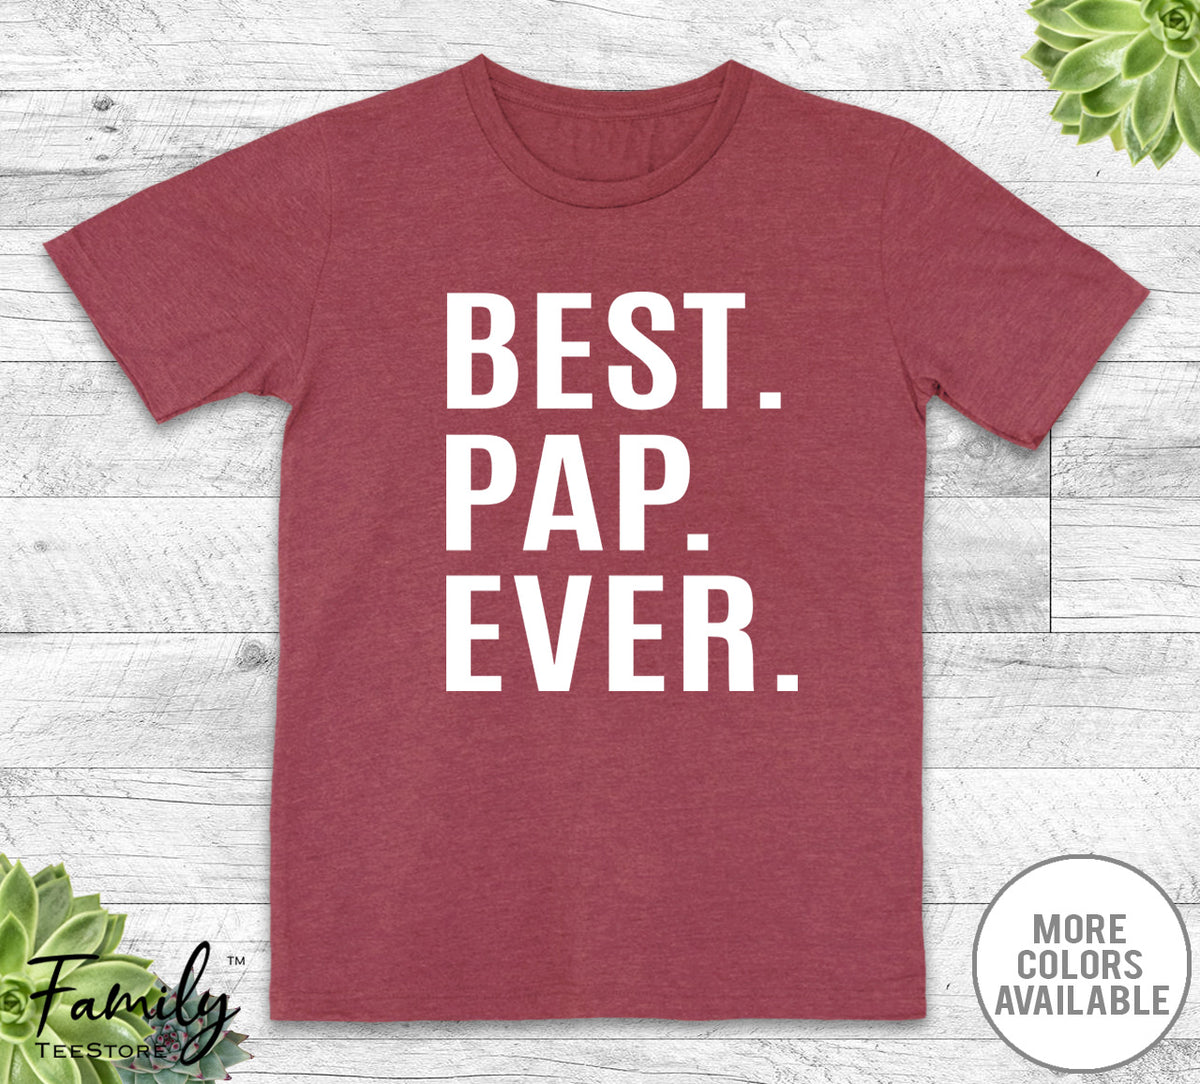 Best Pap Ever - Unisex T-shirt - Pap Shirt - Pap Gift - familyteeprints